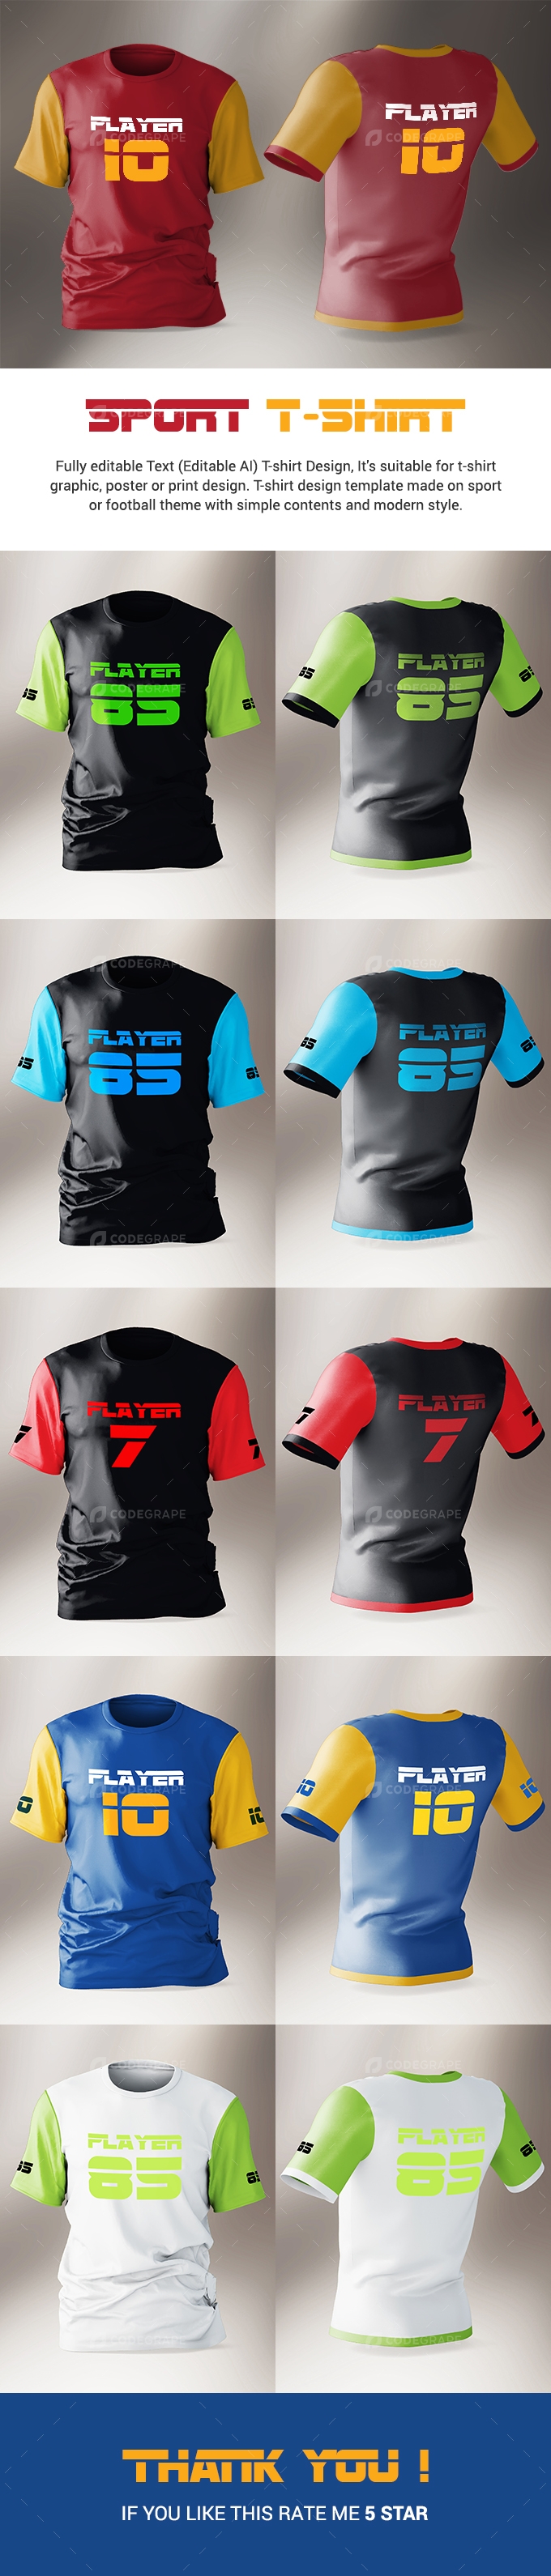 Sport T-Shirt Design